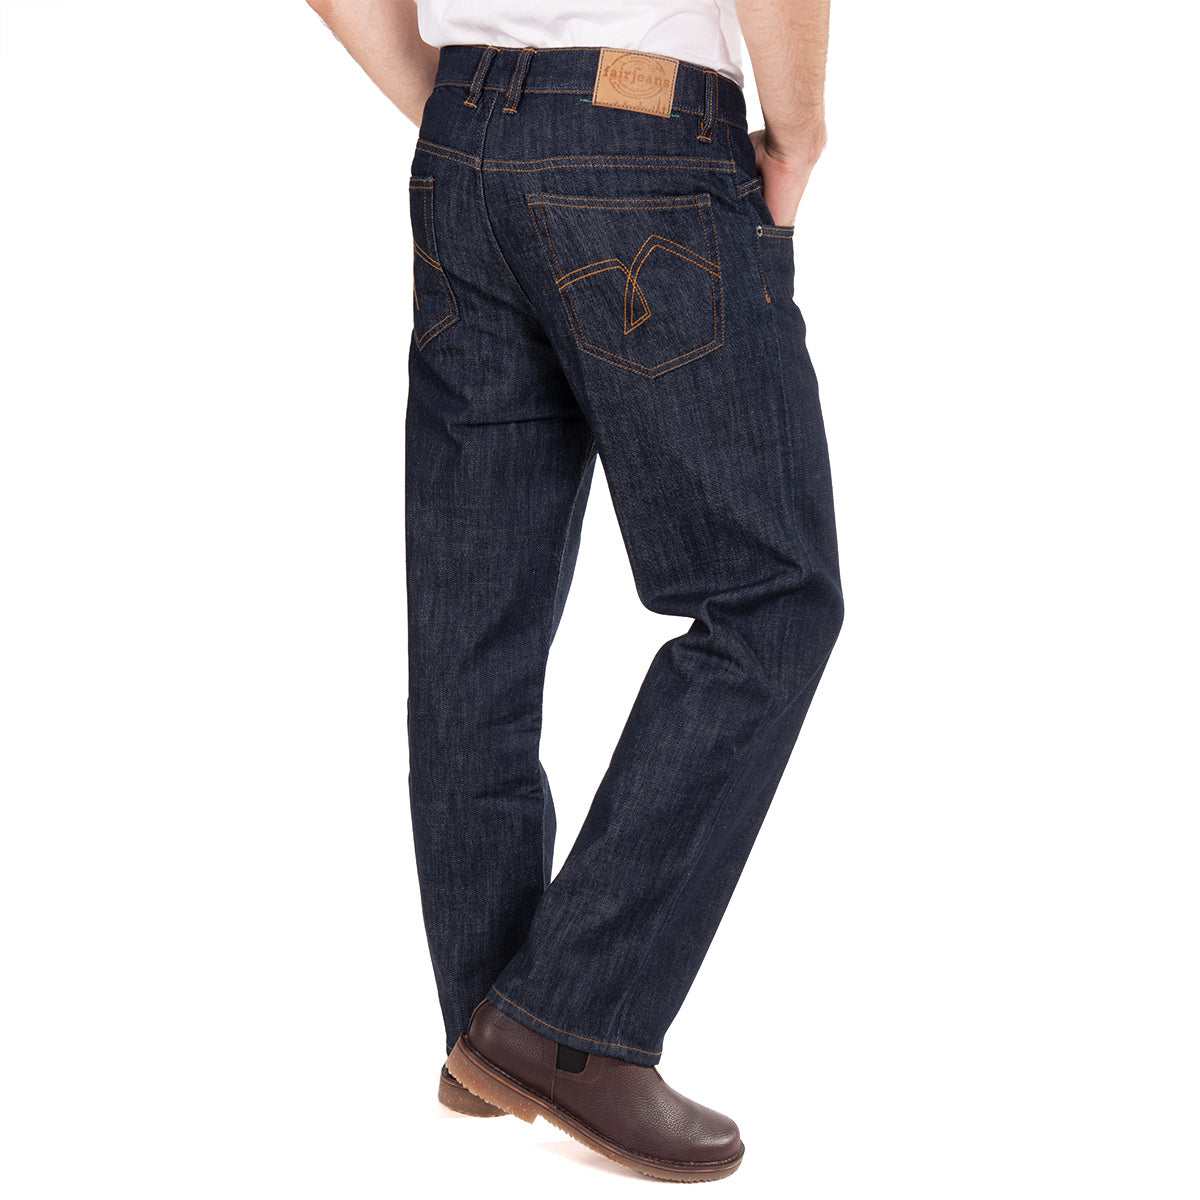 Herren-Jeans von fairjeans: Weit geschnittene Jeans aus nachhaltiger Bio-Baumwolle, locker sitzend und bequem